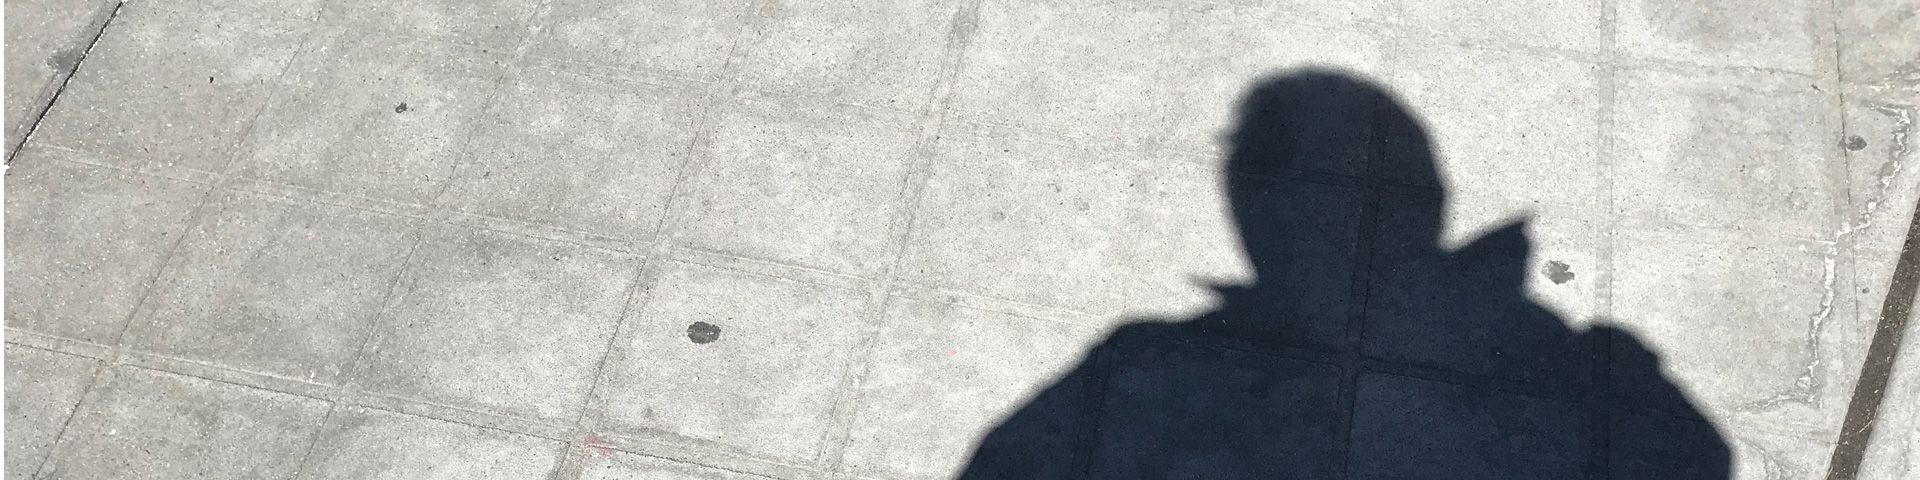 A man's shadow on a sidewalk